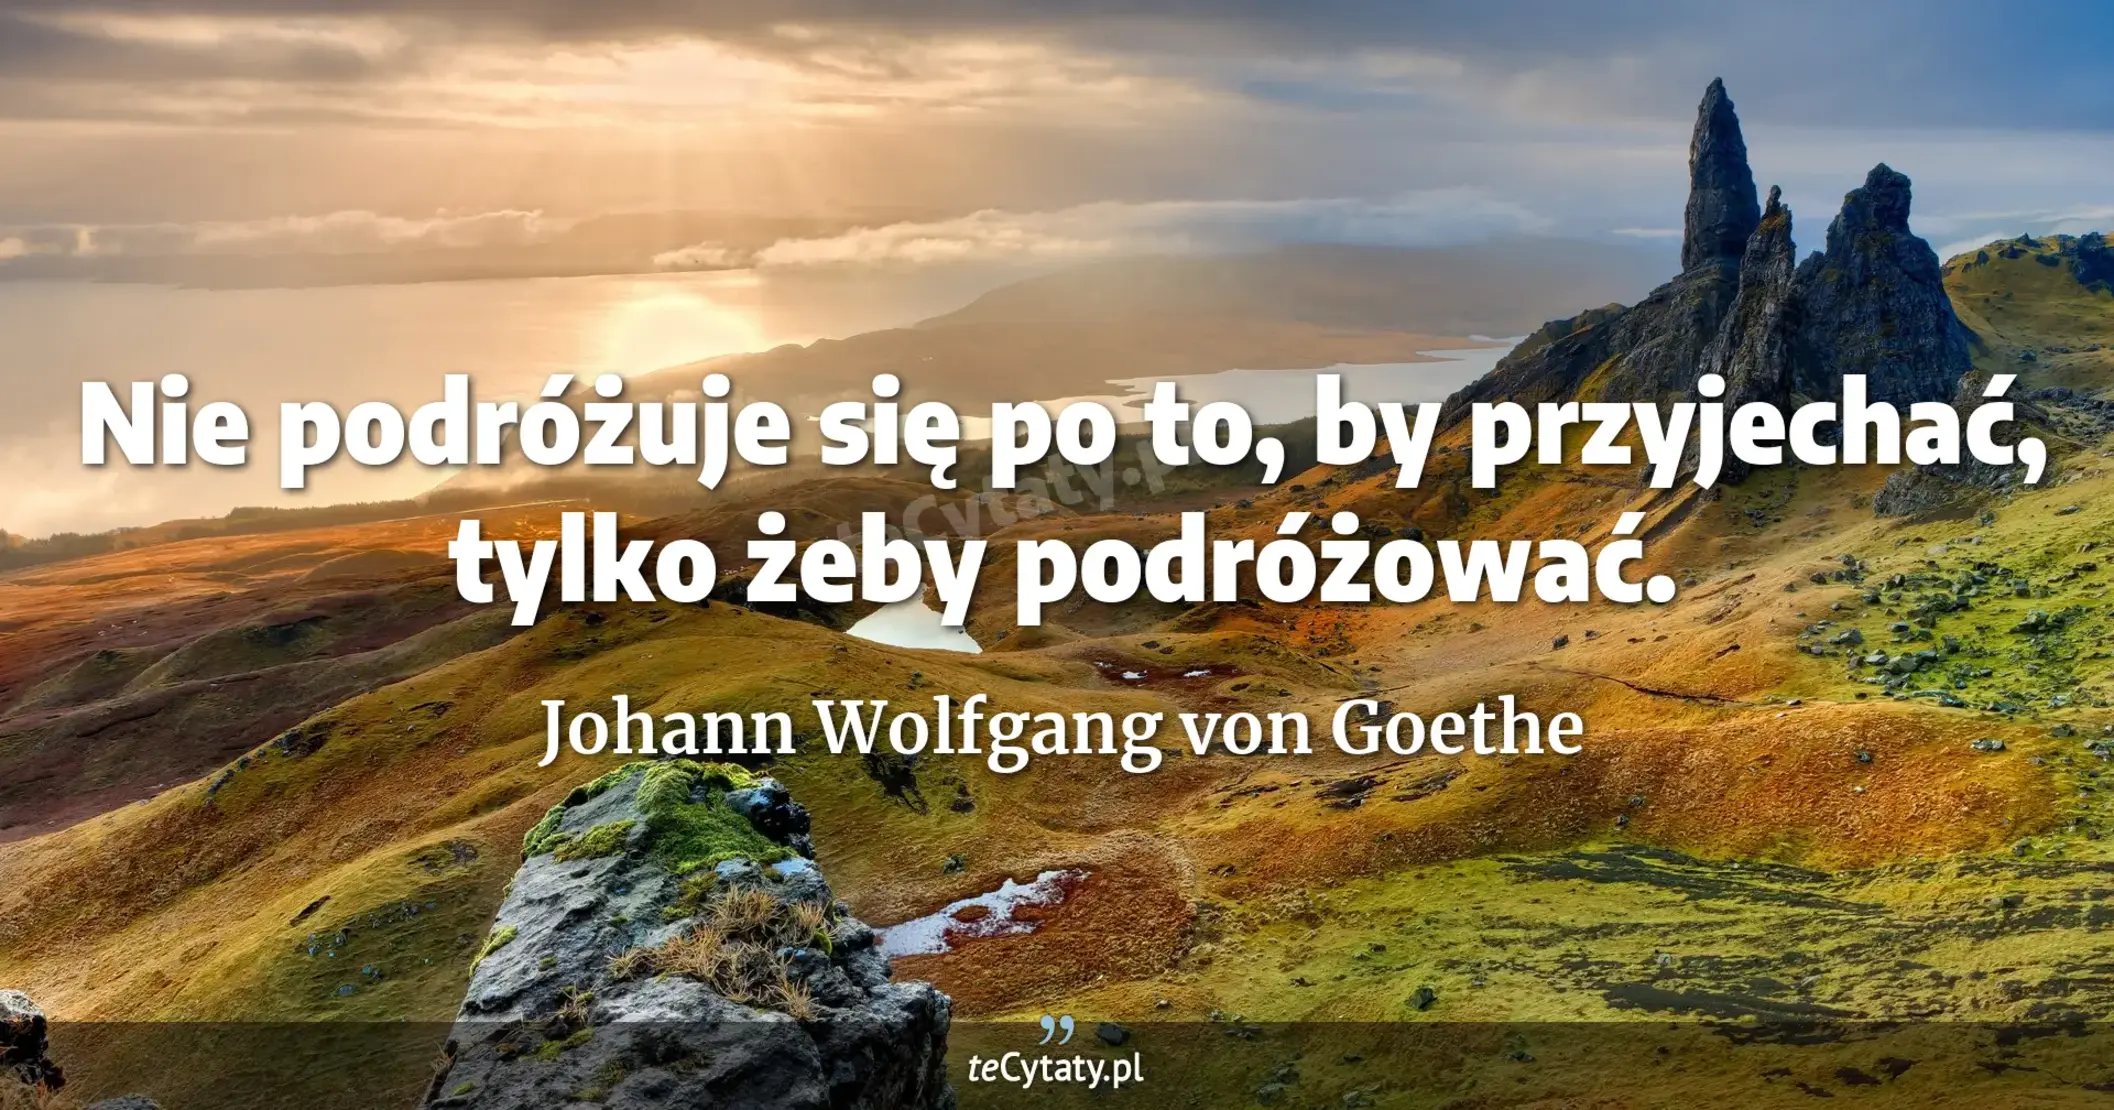 Nie podróżuje się po to, by przyjechać, tylko żeby podróżować. - Johann Wolfgang von Goethe